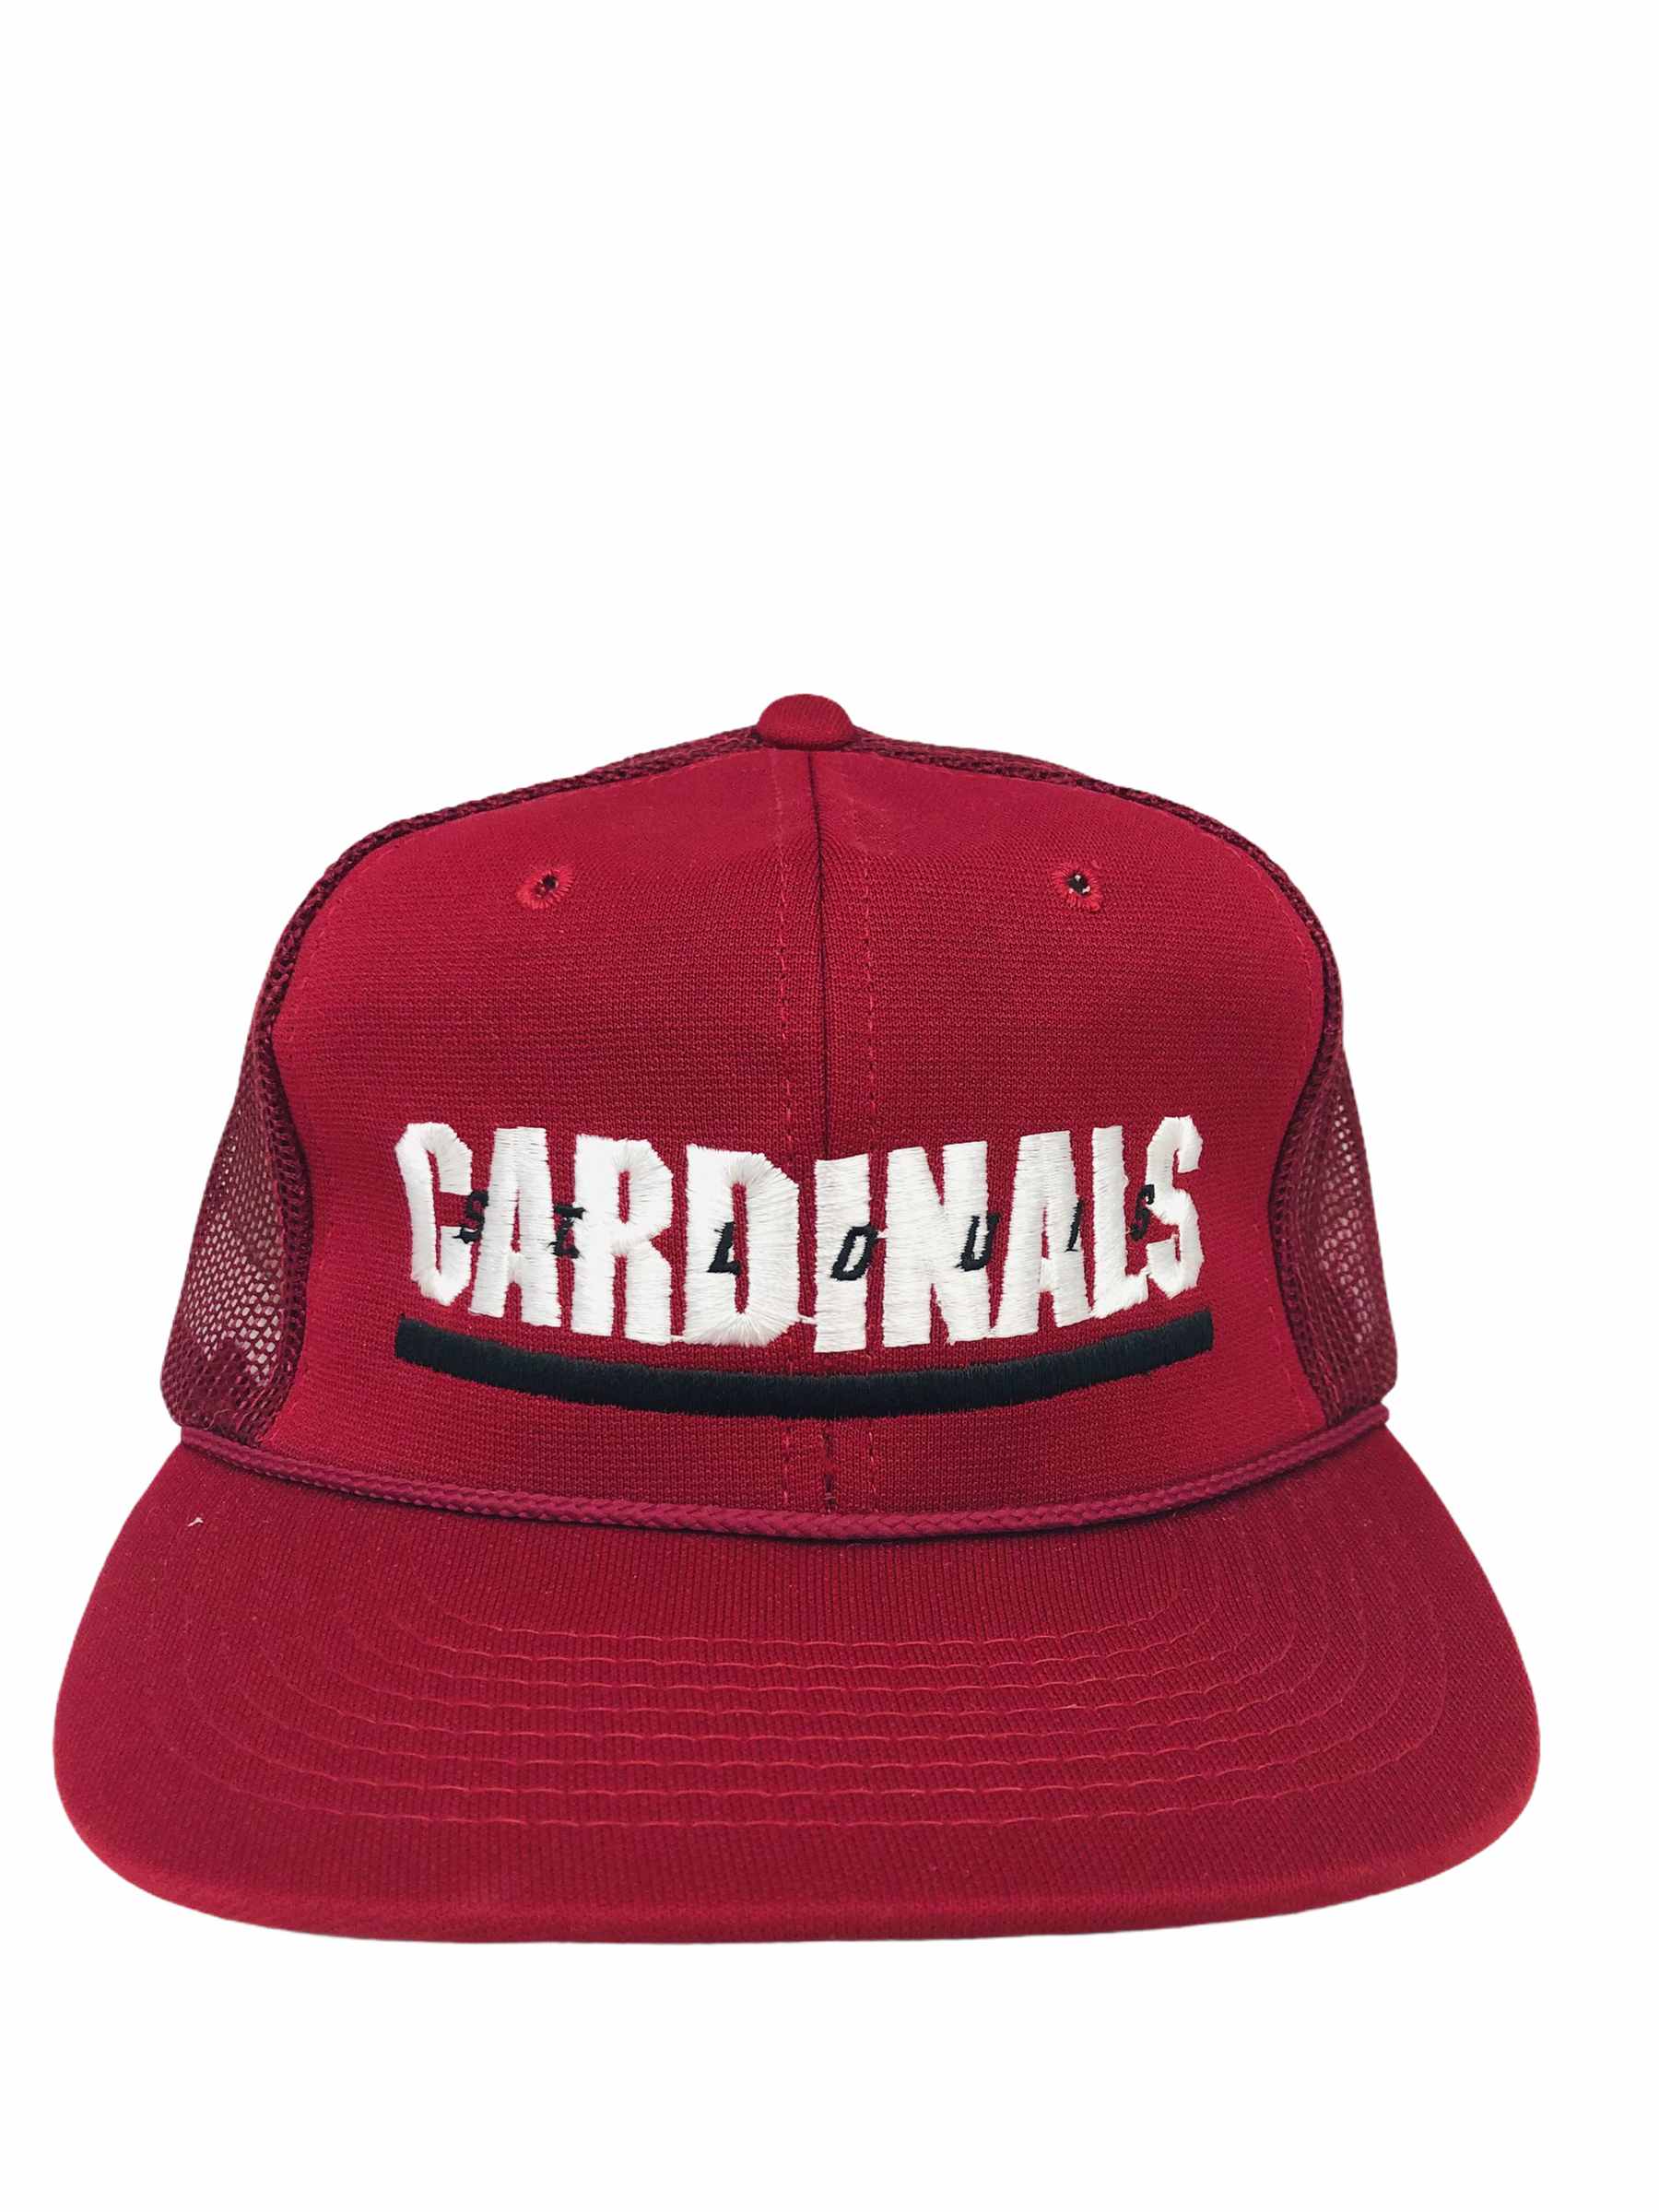 Arizona Cardinals Vintage Gear, Cardinals Throwback Jerseys, Vintage  Cardinals Clothing